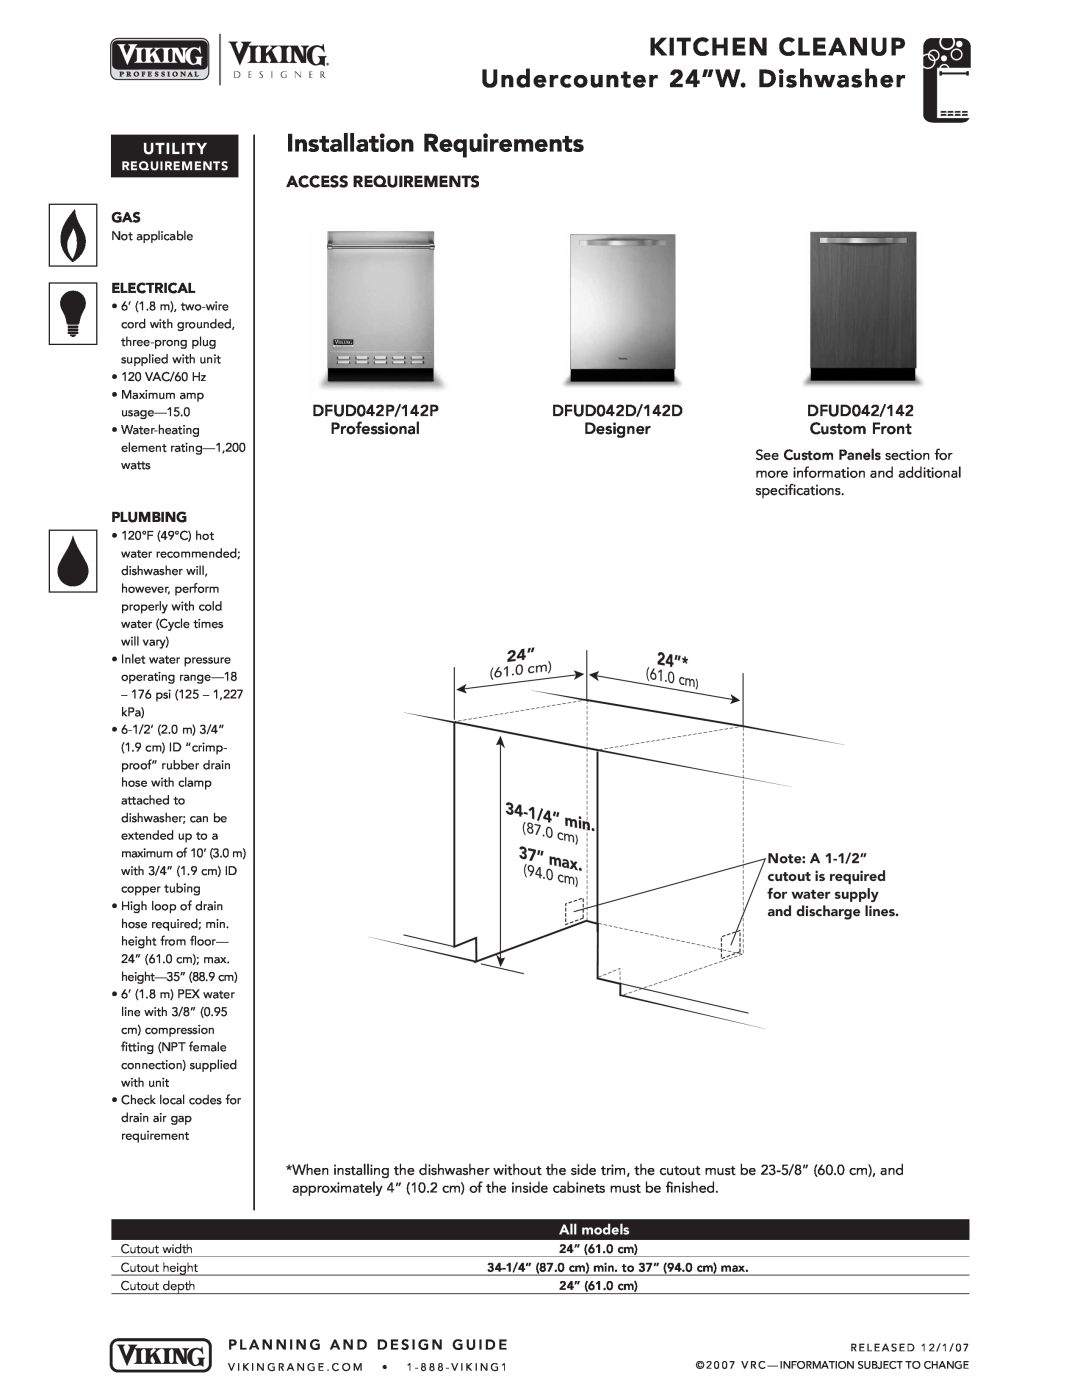 Viking DFUD042/142* Designer Installation Requirements, KITCHEN CLEANUP Undercounter 24”W. Dishwasher, 1/4”, Utility, 87.0 